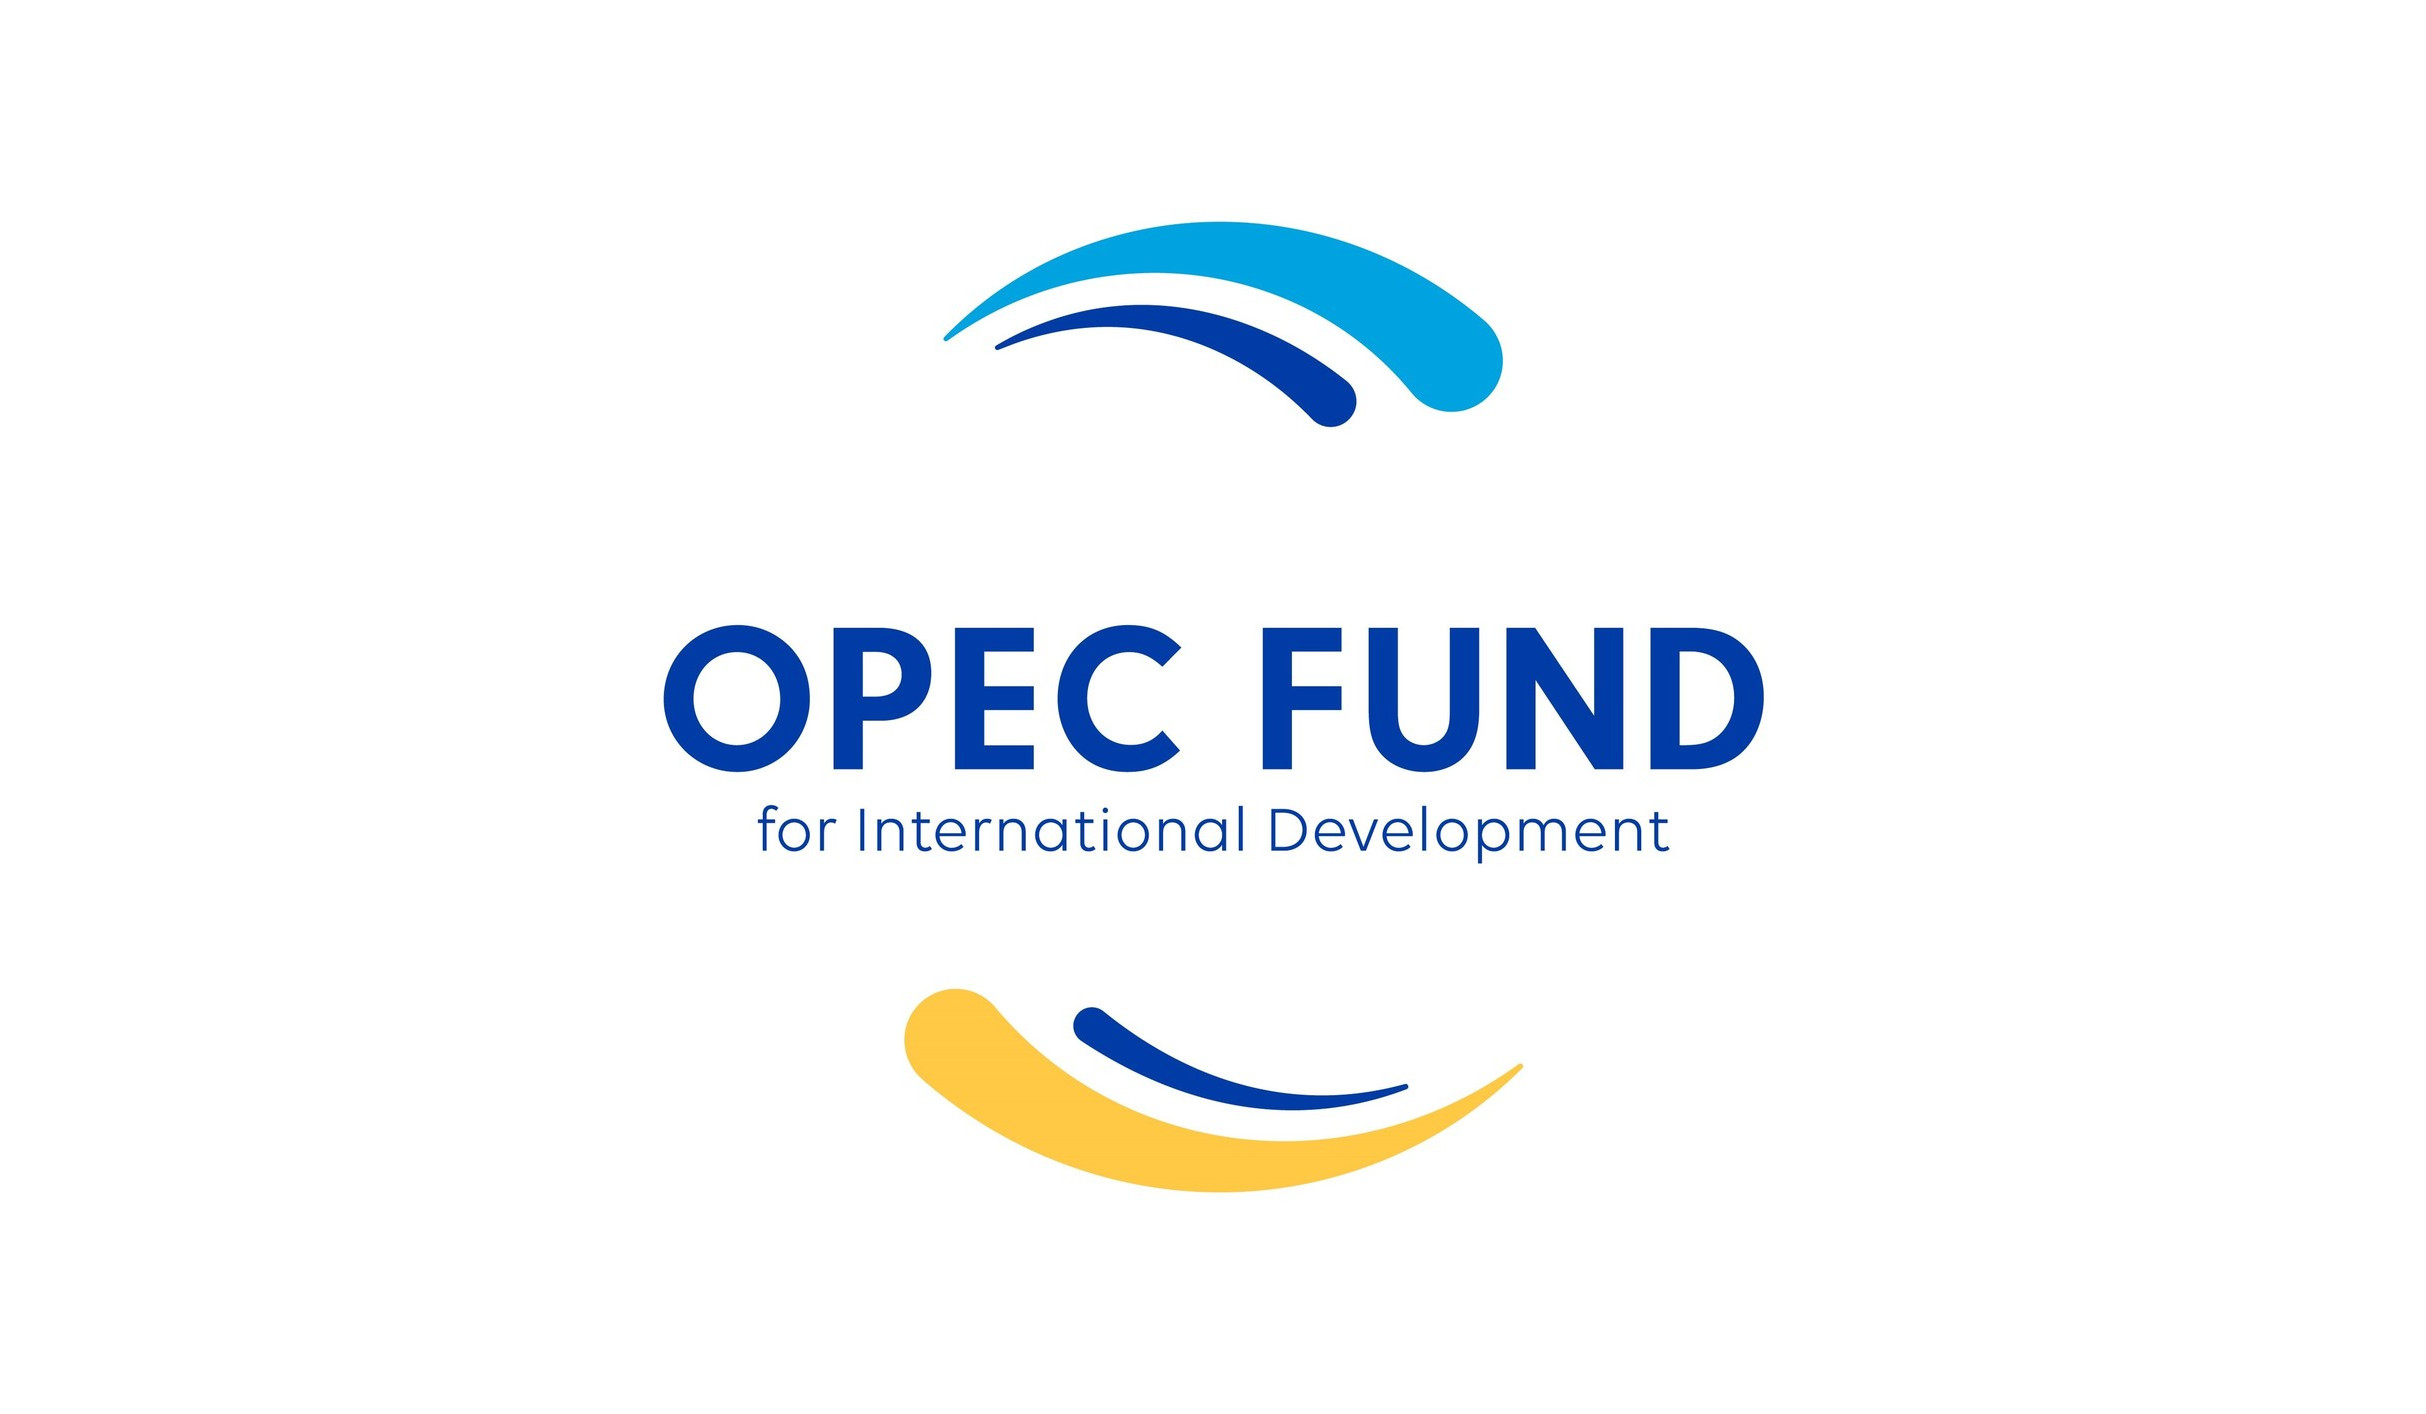 OPEC-ի Միջազգային զարգացման հիմնադրամը Հայաստանին 50 միլիոն եվրո վարկ կհատկացնի